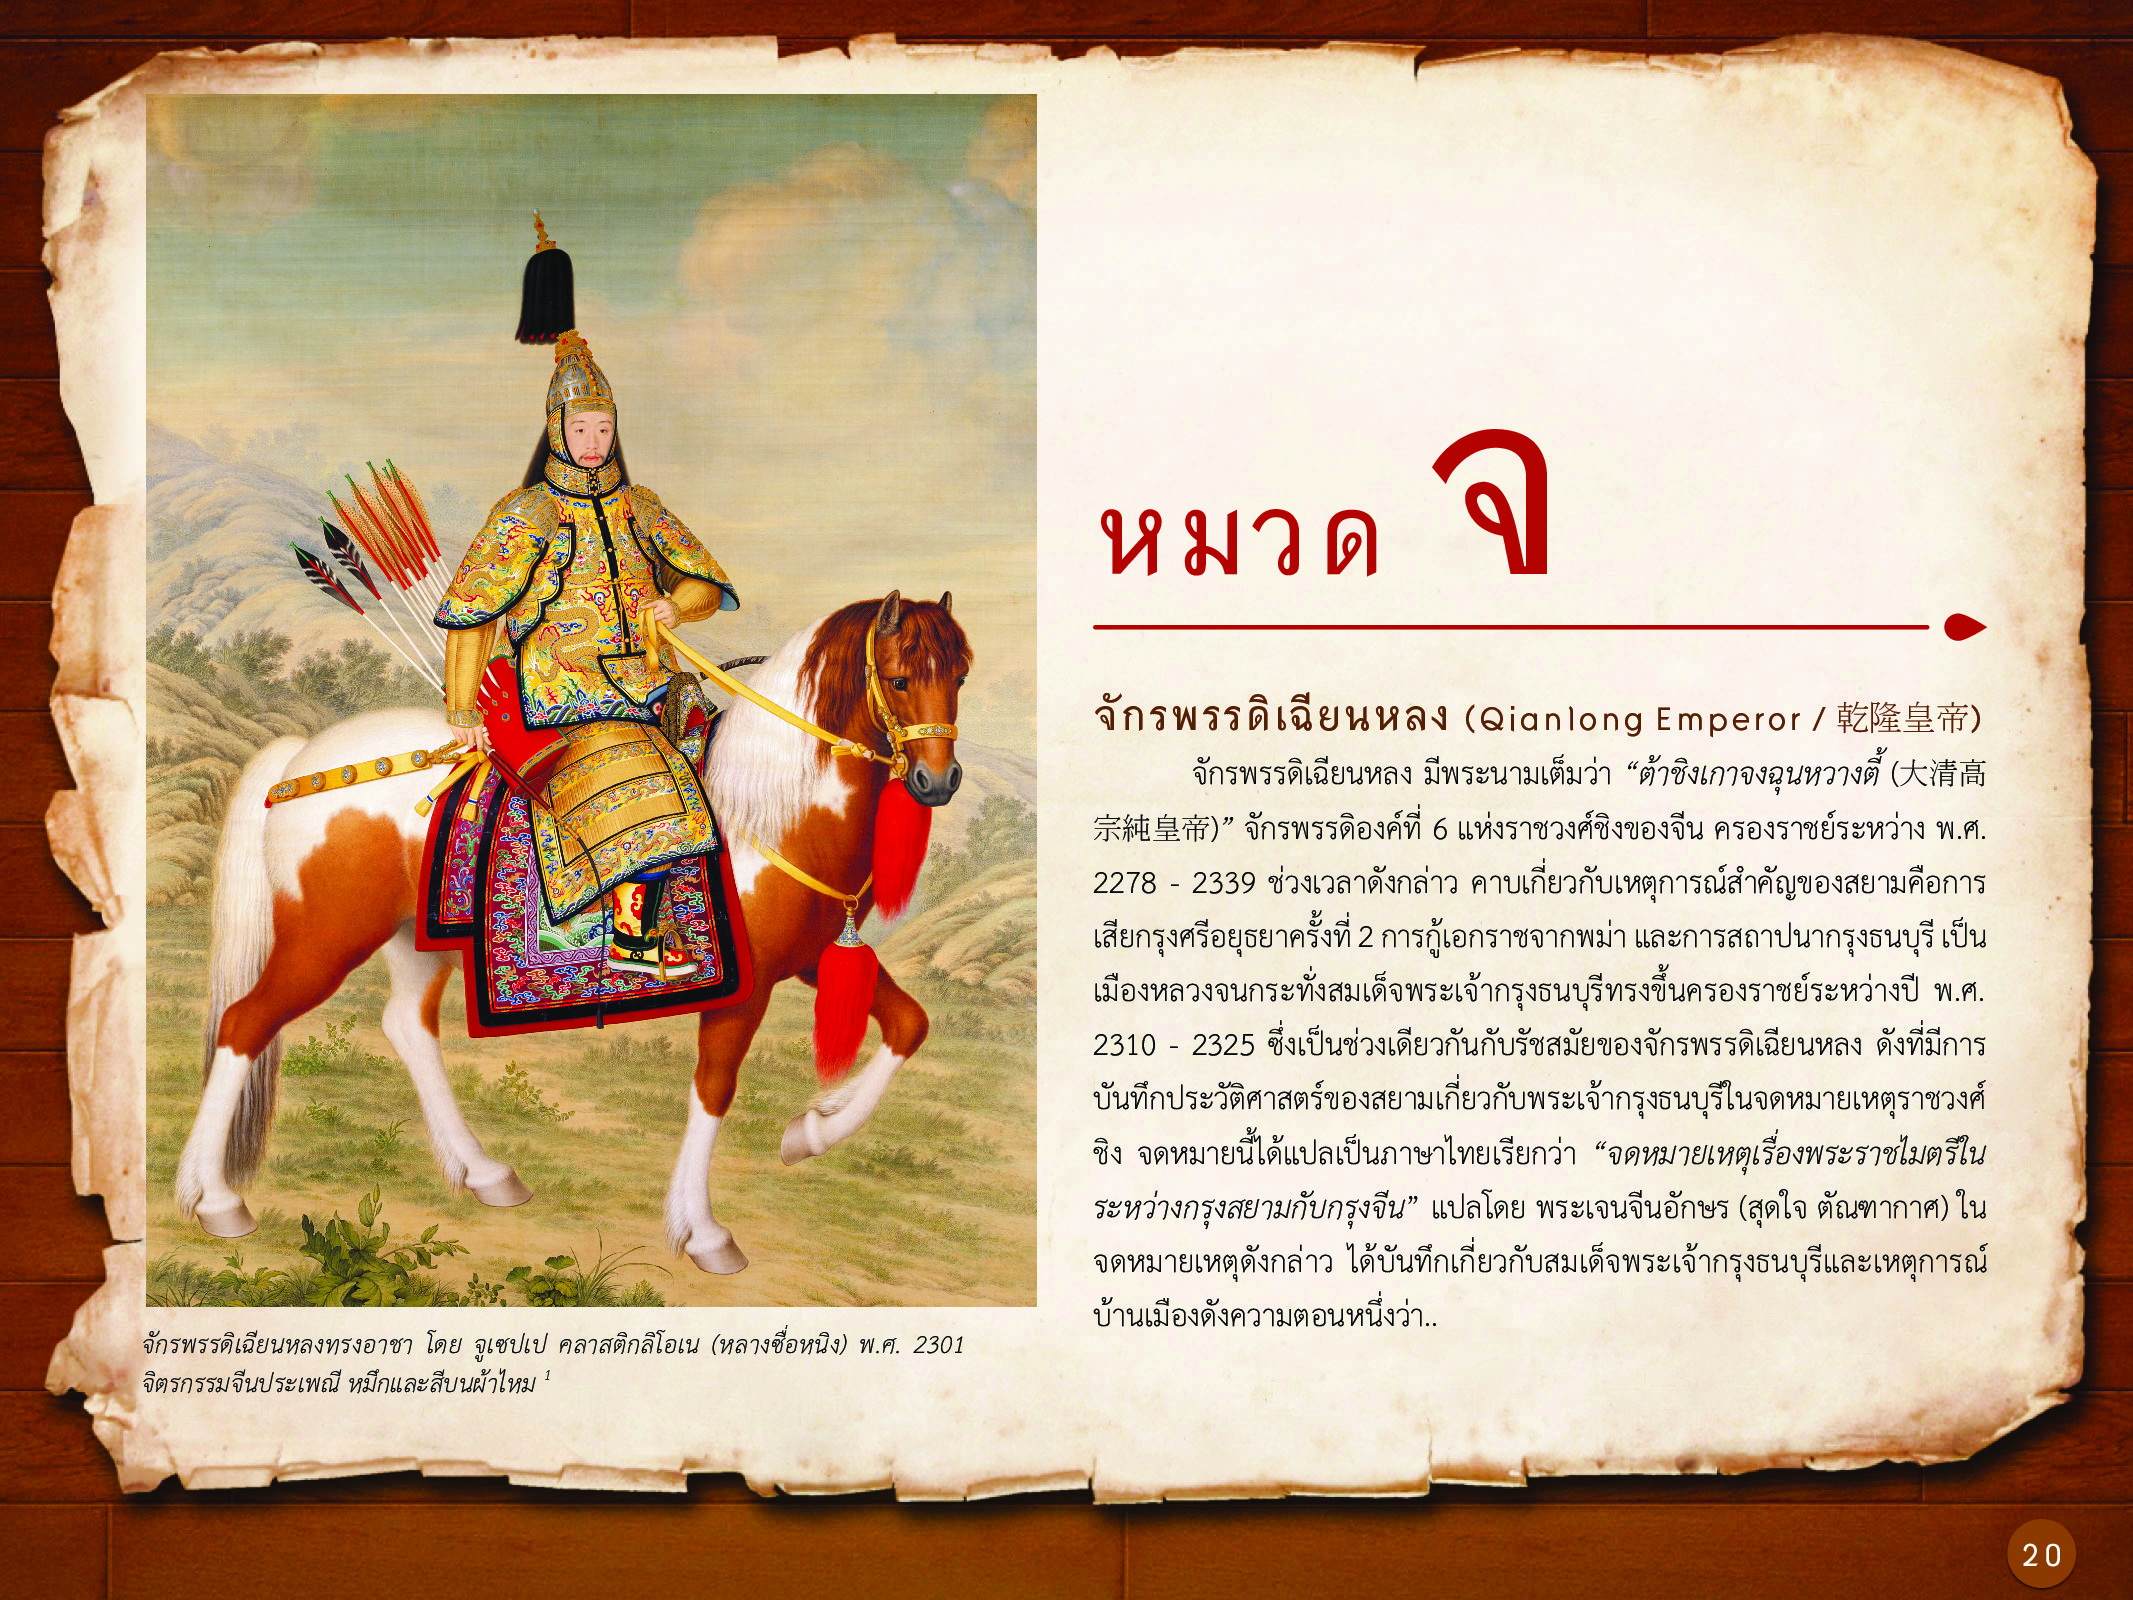 ประวัติศาสตร์กรุงธนบุรี ./images/history_dhonburi/20.jpg